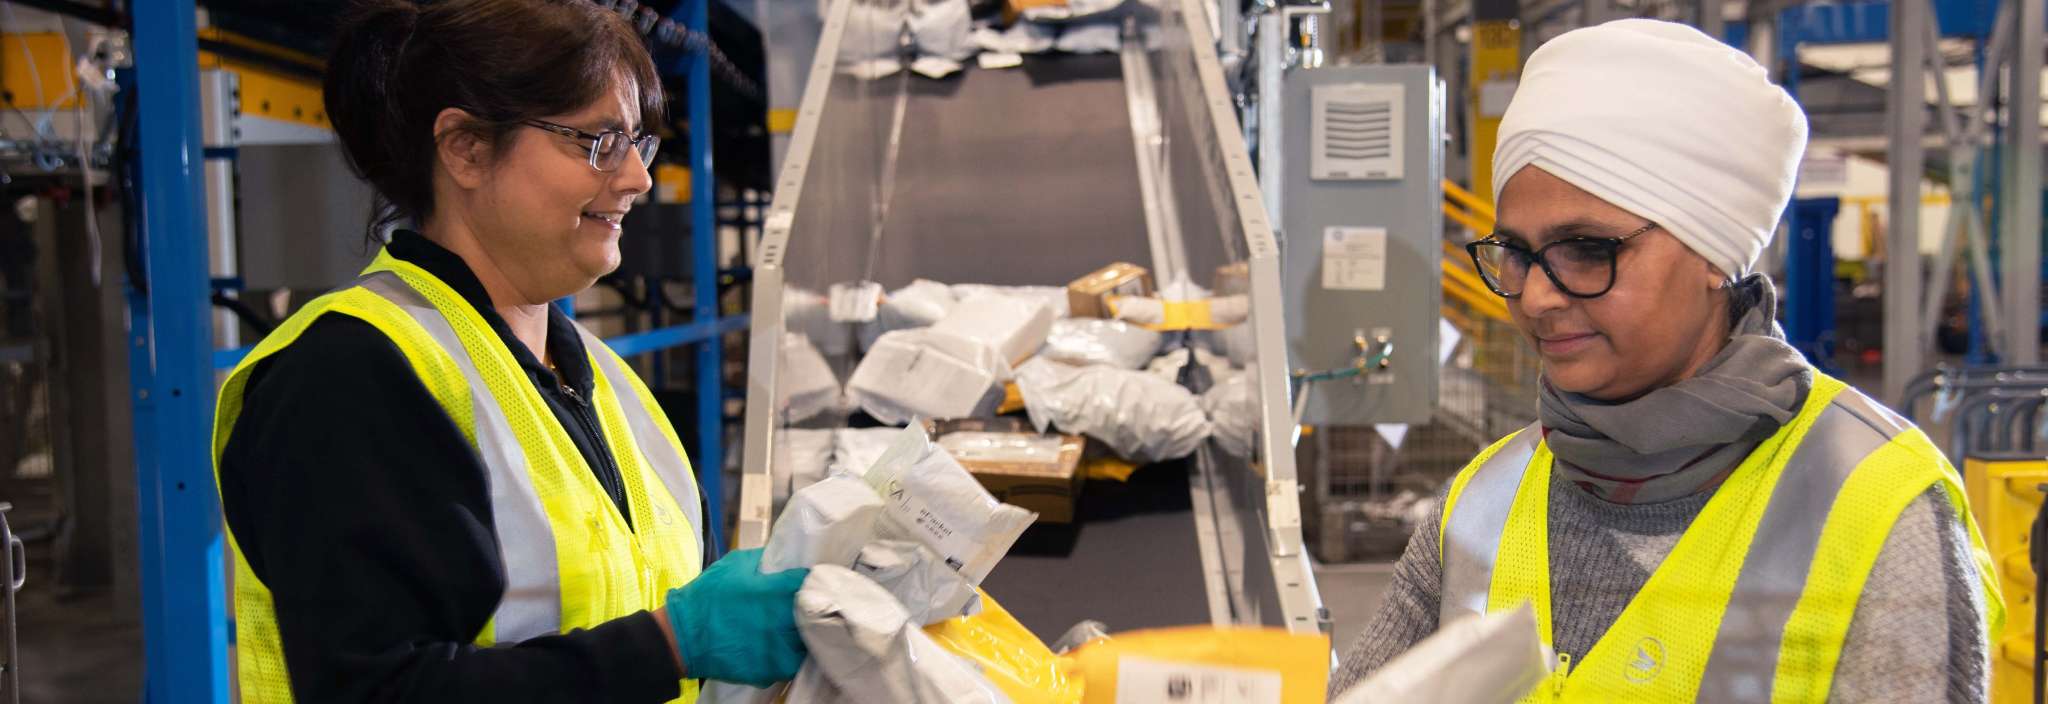 Deux employées de Postes Canada portant un gilet de sécurité jaune vif trient des colis et des enveloppes